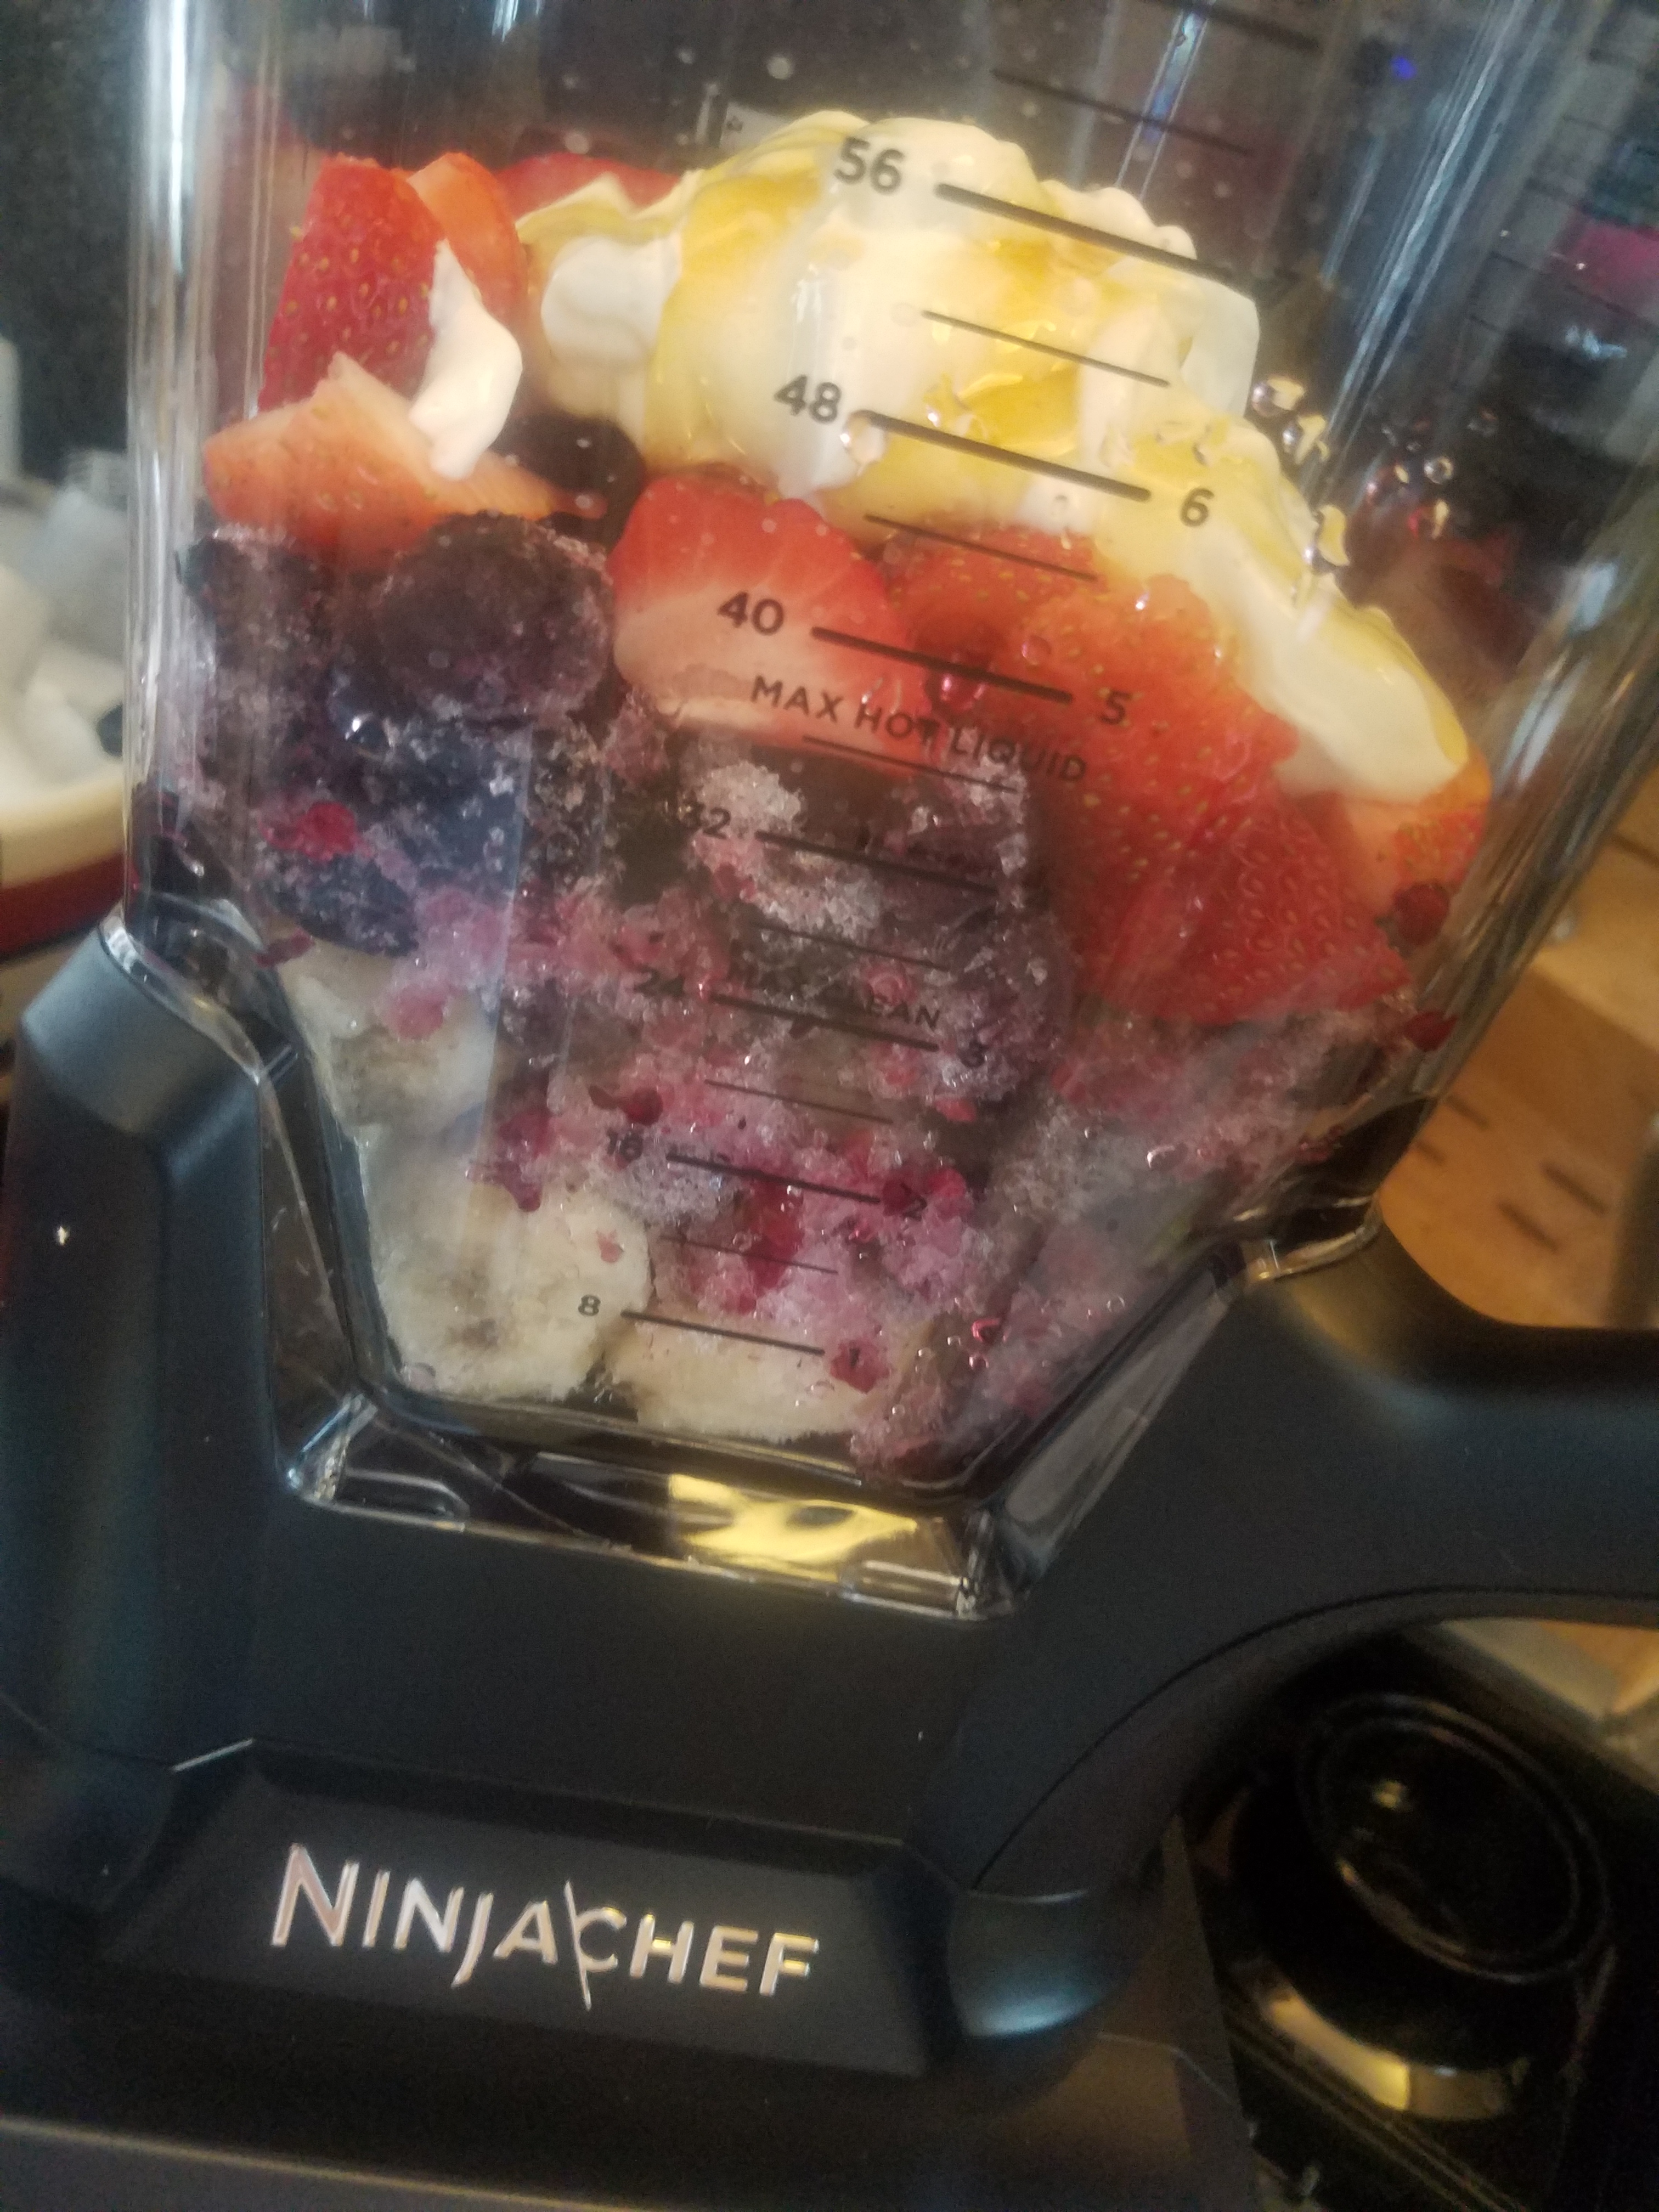 Ninja Chef Blender